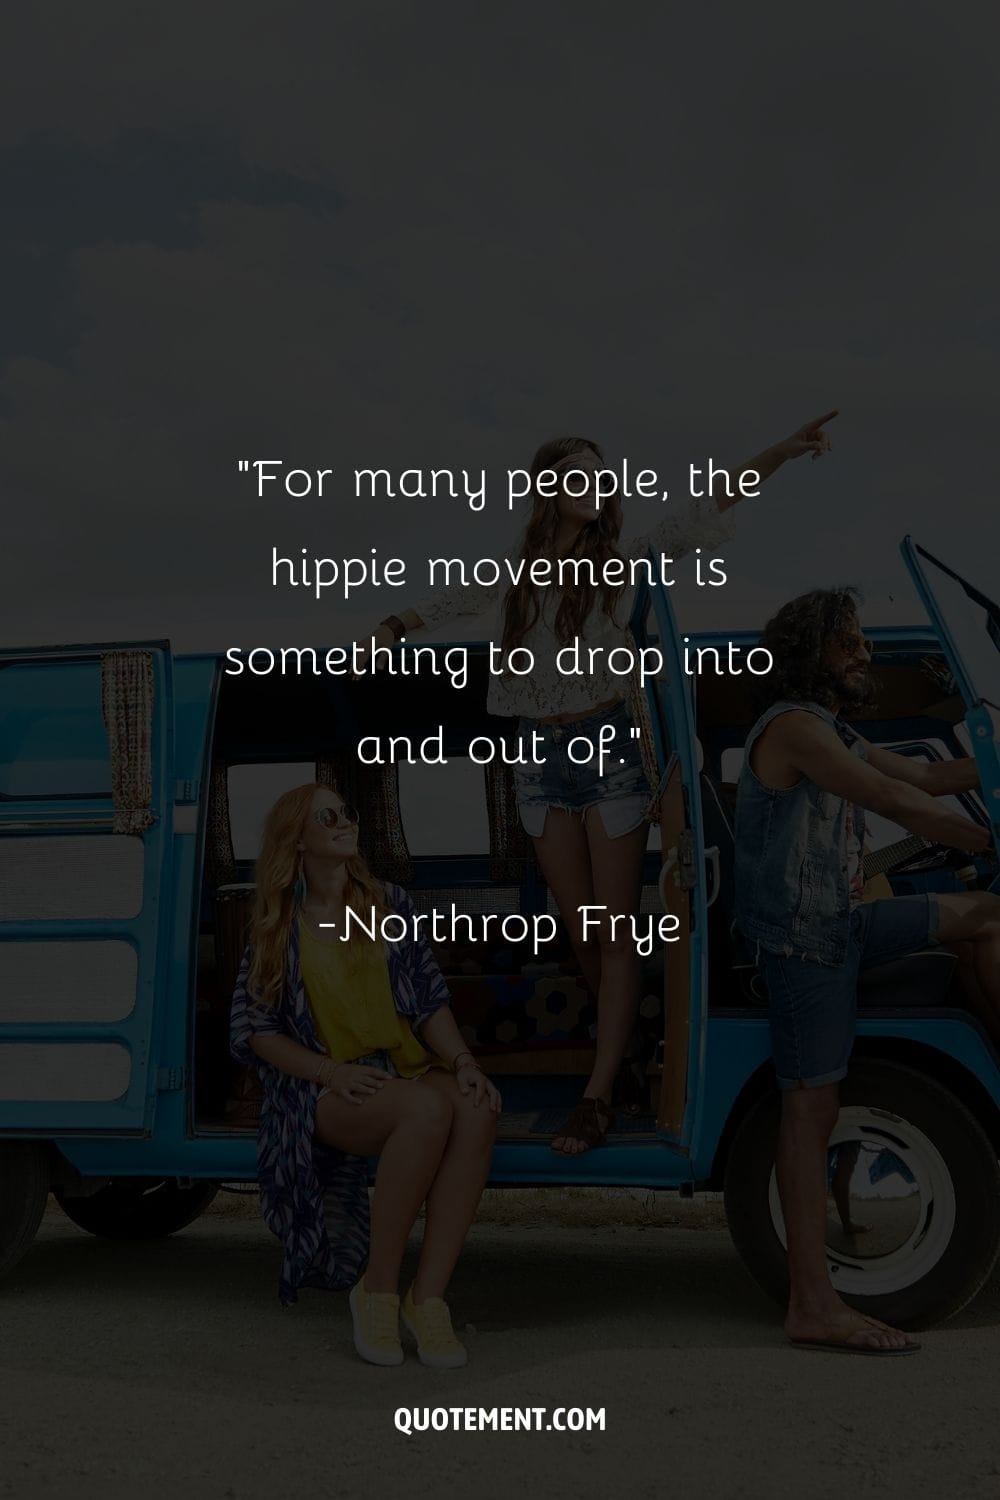 un trío de espíritus libres irradia felicidad a bordo de su autobús hippie